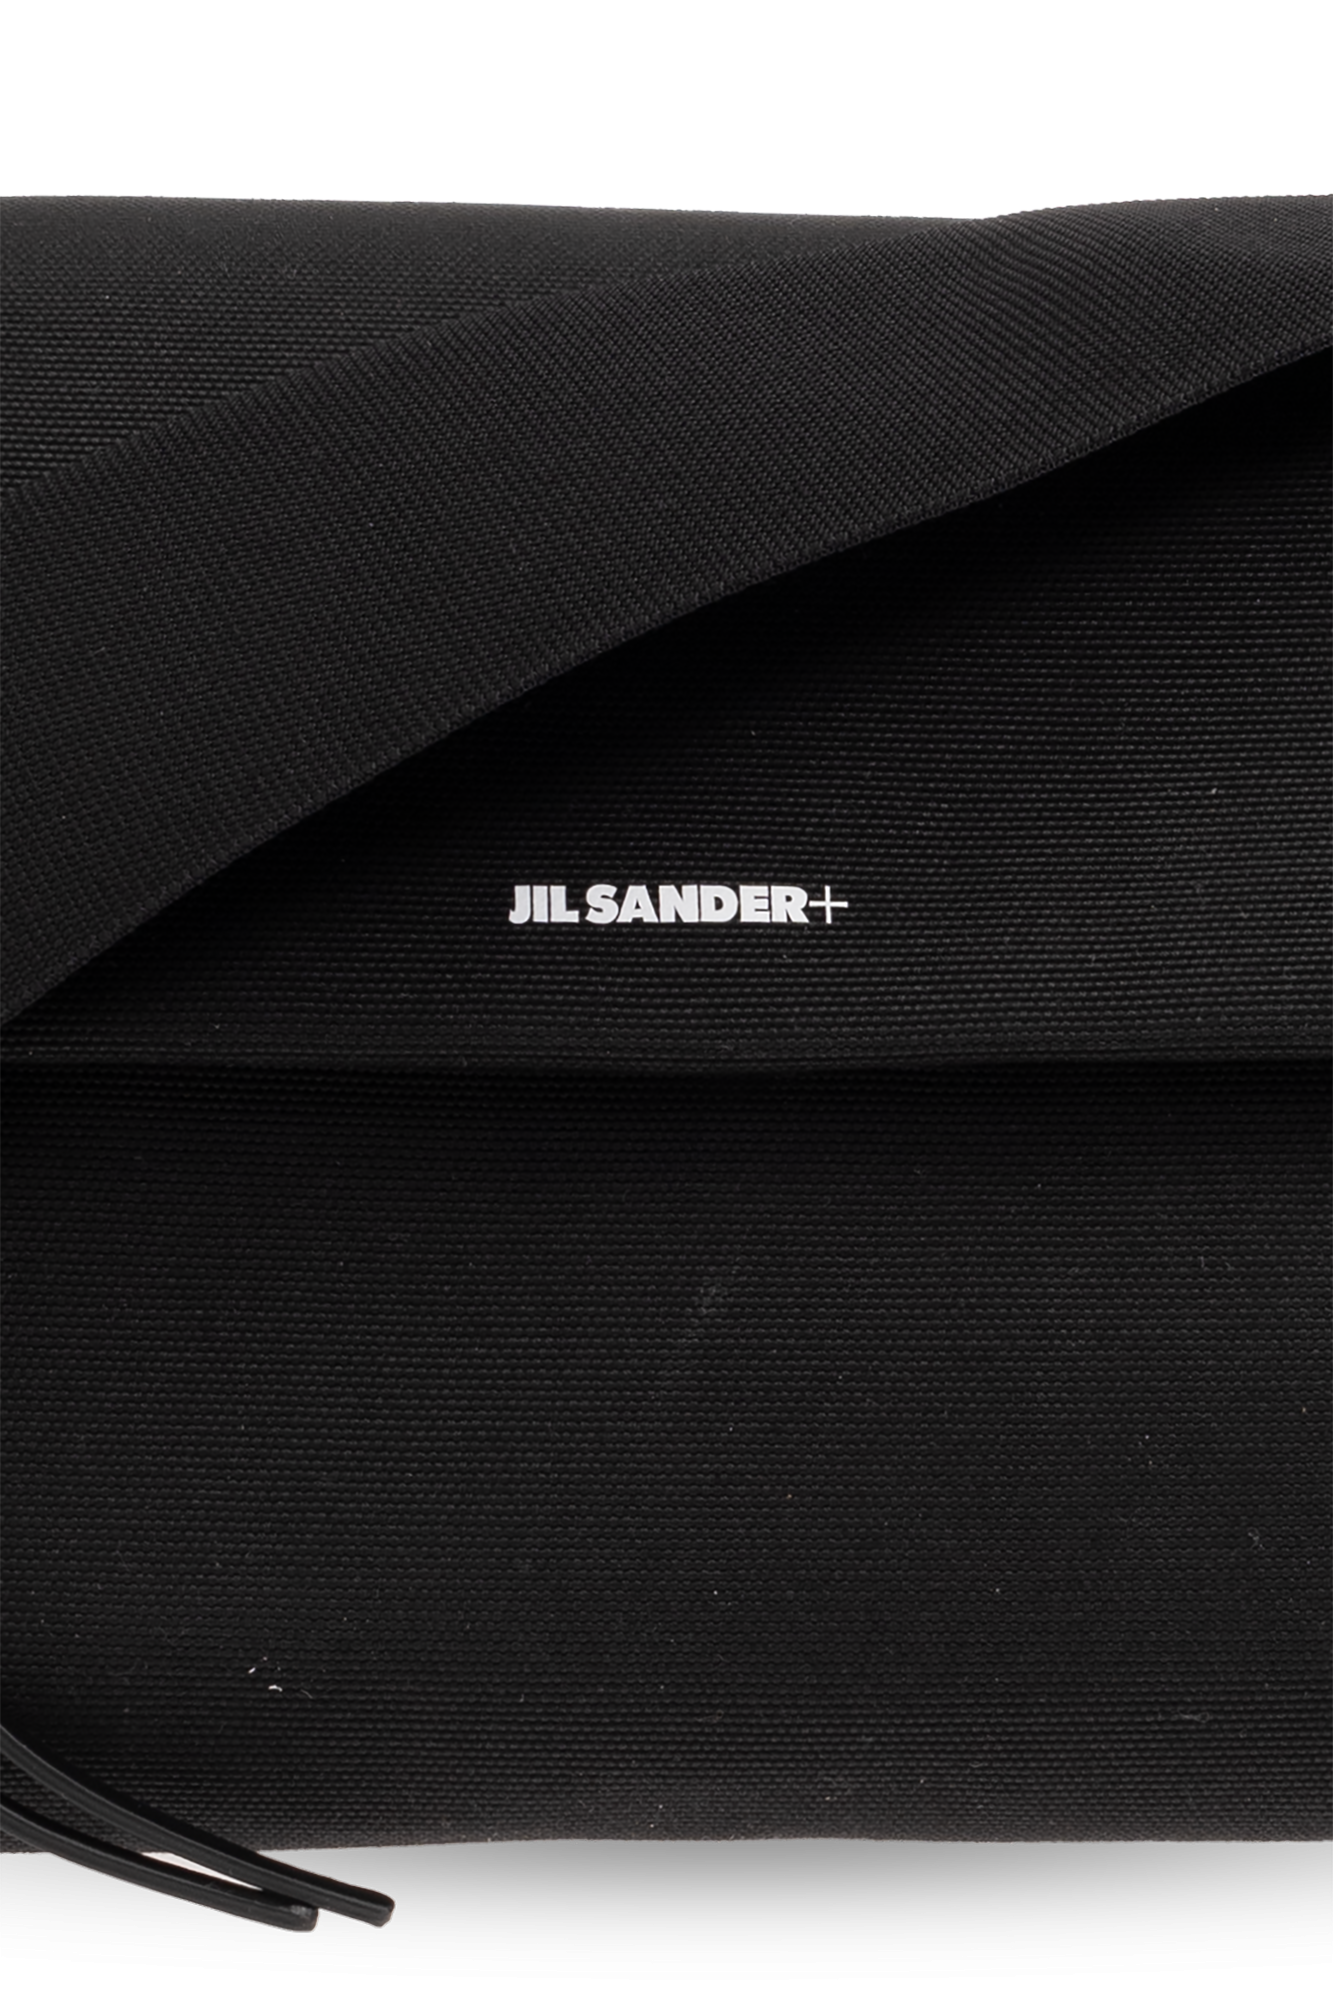 JIL SANDER+ Shoulder bag with logo